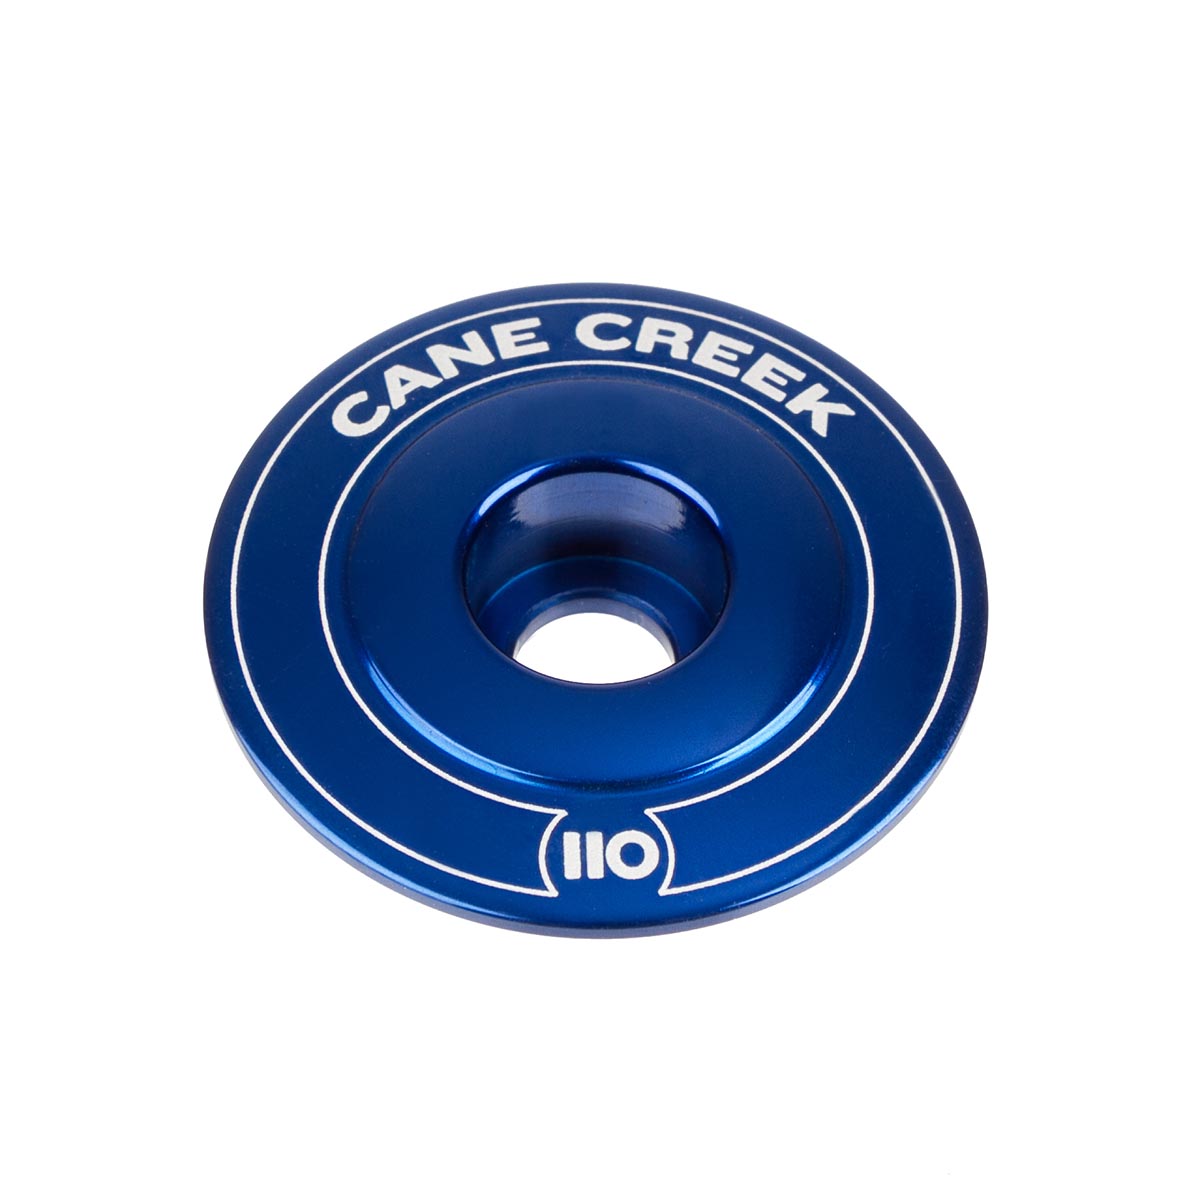 Cane Creek Bouchon de Potence 110 Bleu, Aluminium, 1 1/8 Pouces